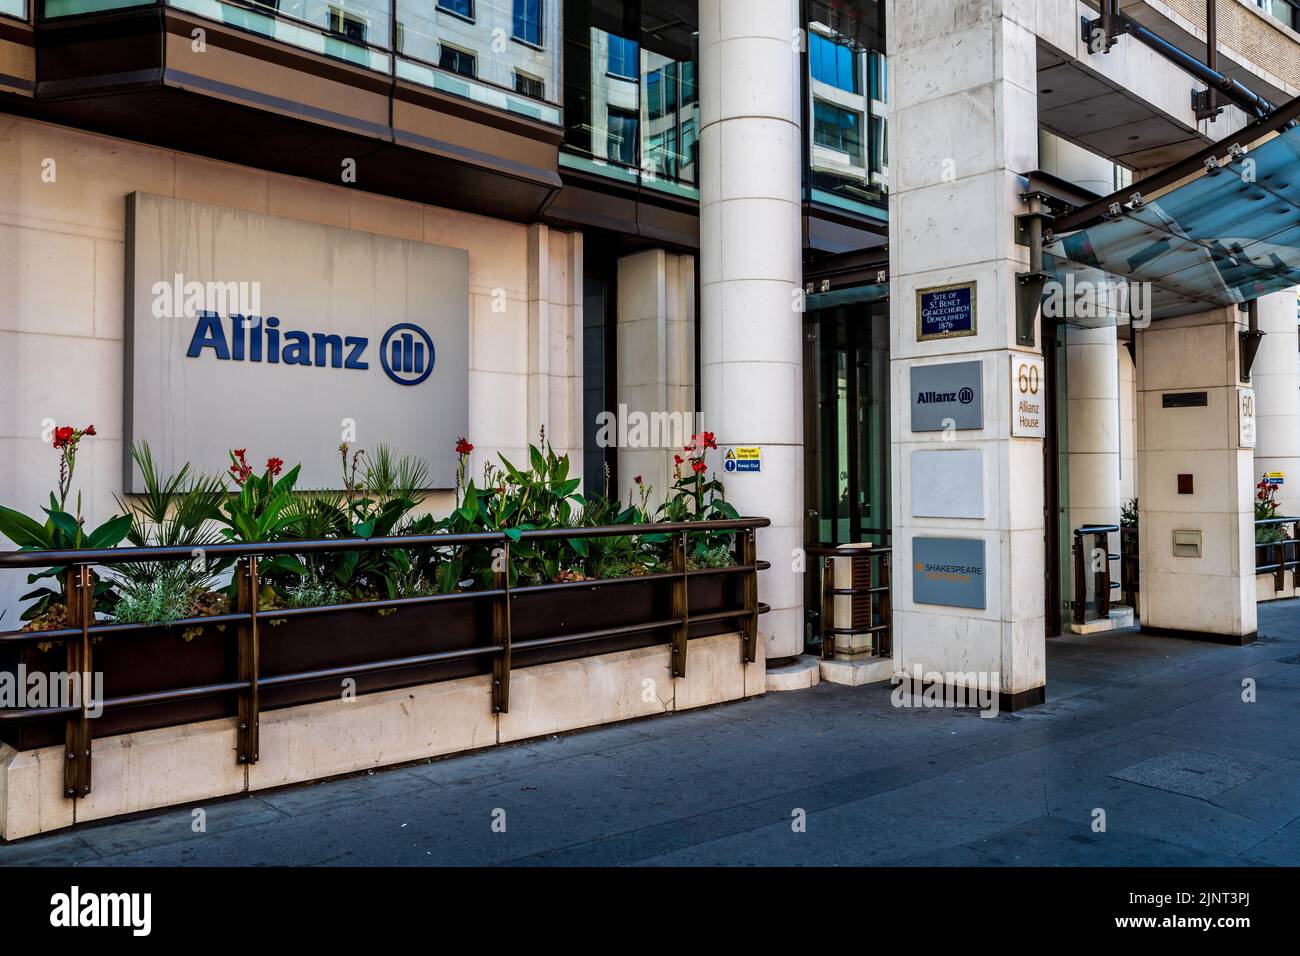 Allianz Insurance bureaux de Londres au 60 Gracechurch Street dans le quartier financier de la ville de Londres. Allianz Global Corporate & Specialty Londres. Banque D'Images